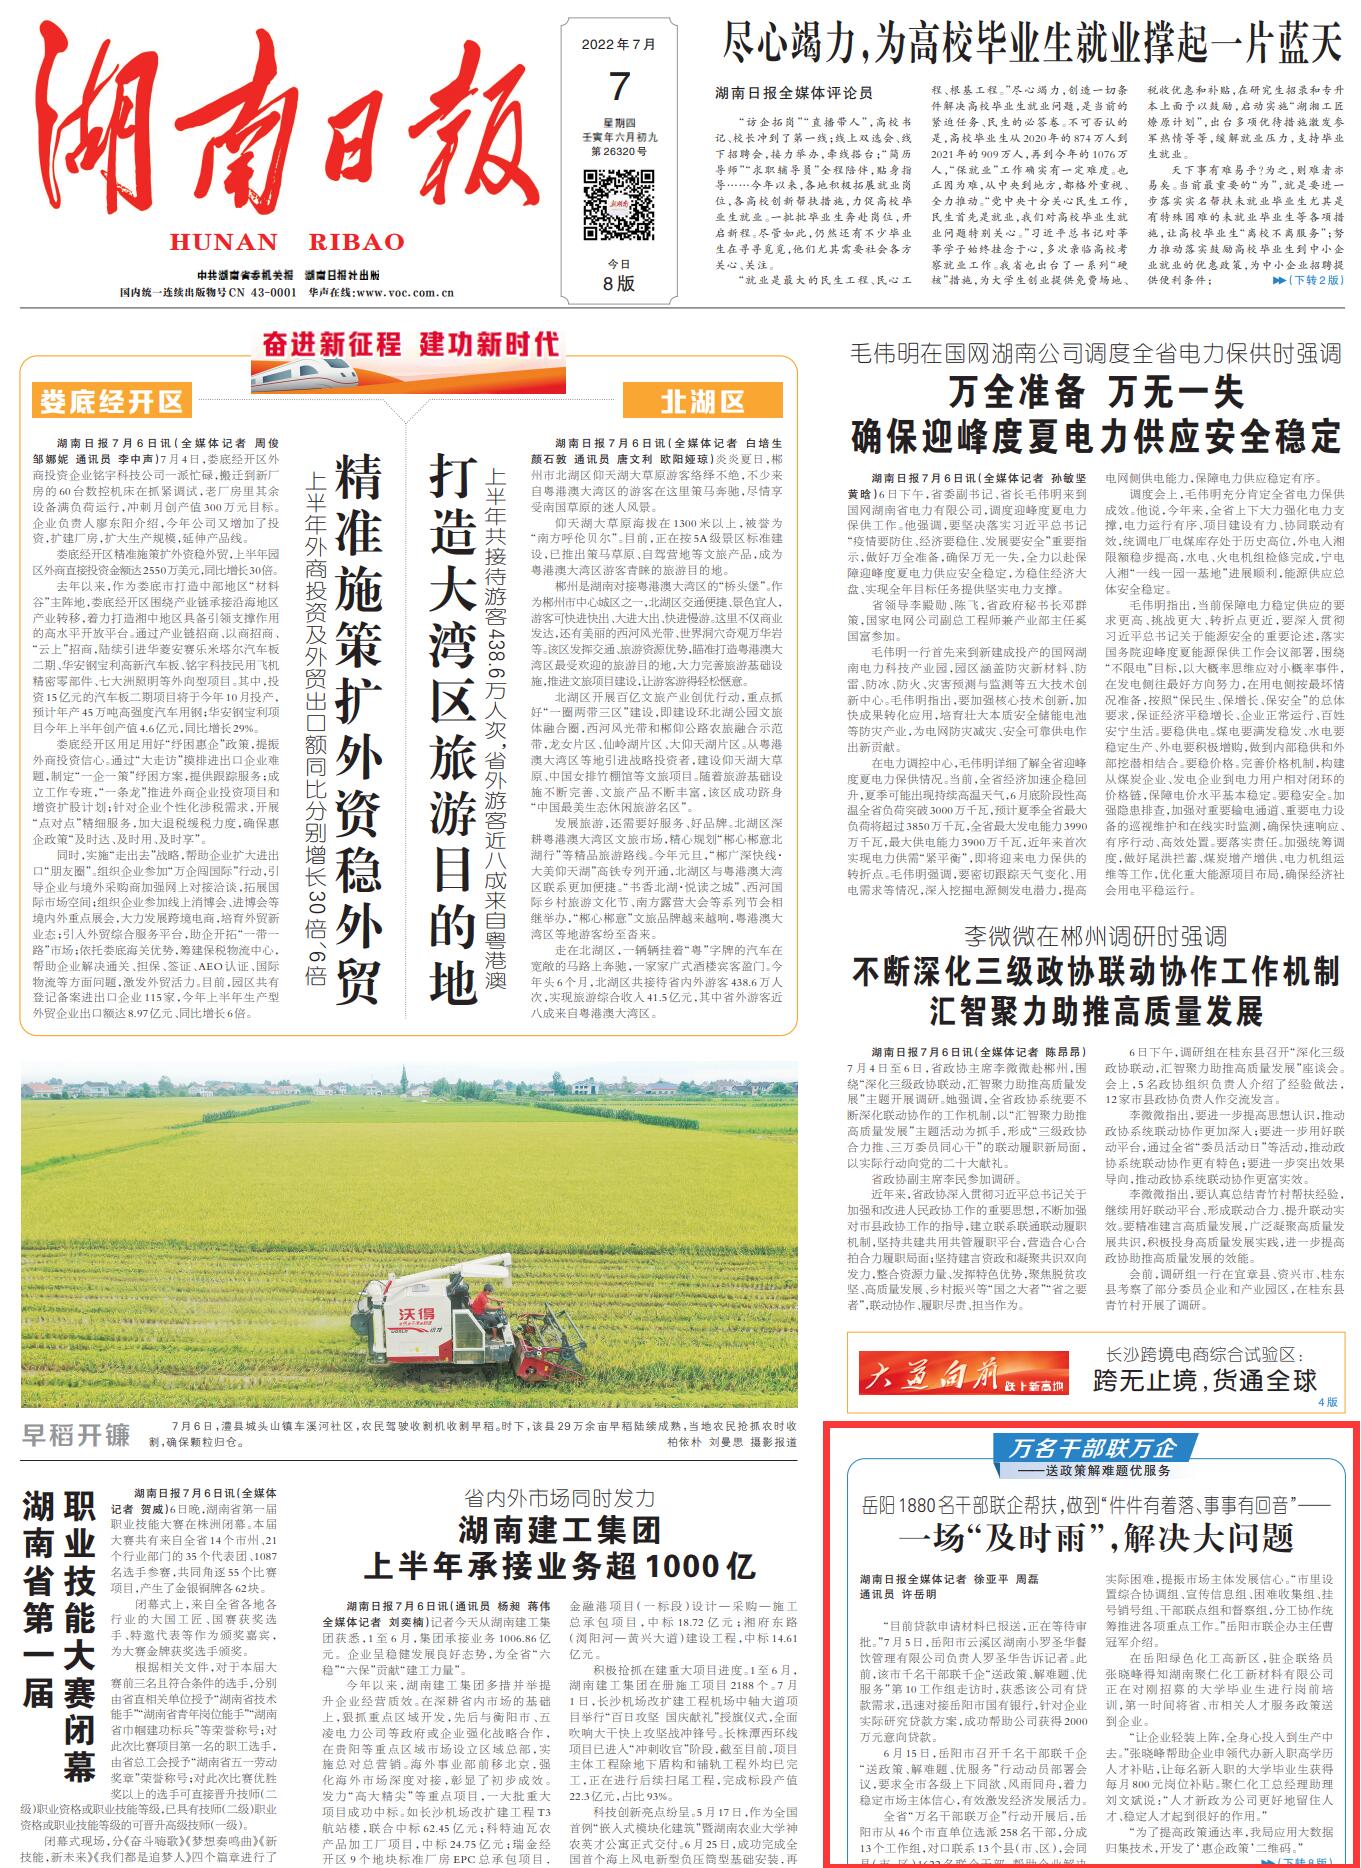 湖南日报头版 || 一场“及时雨”，解决大问题